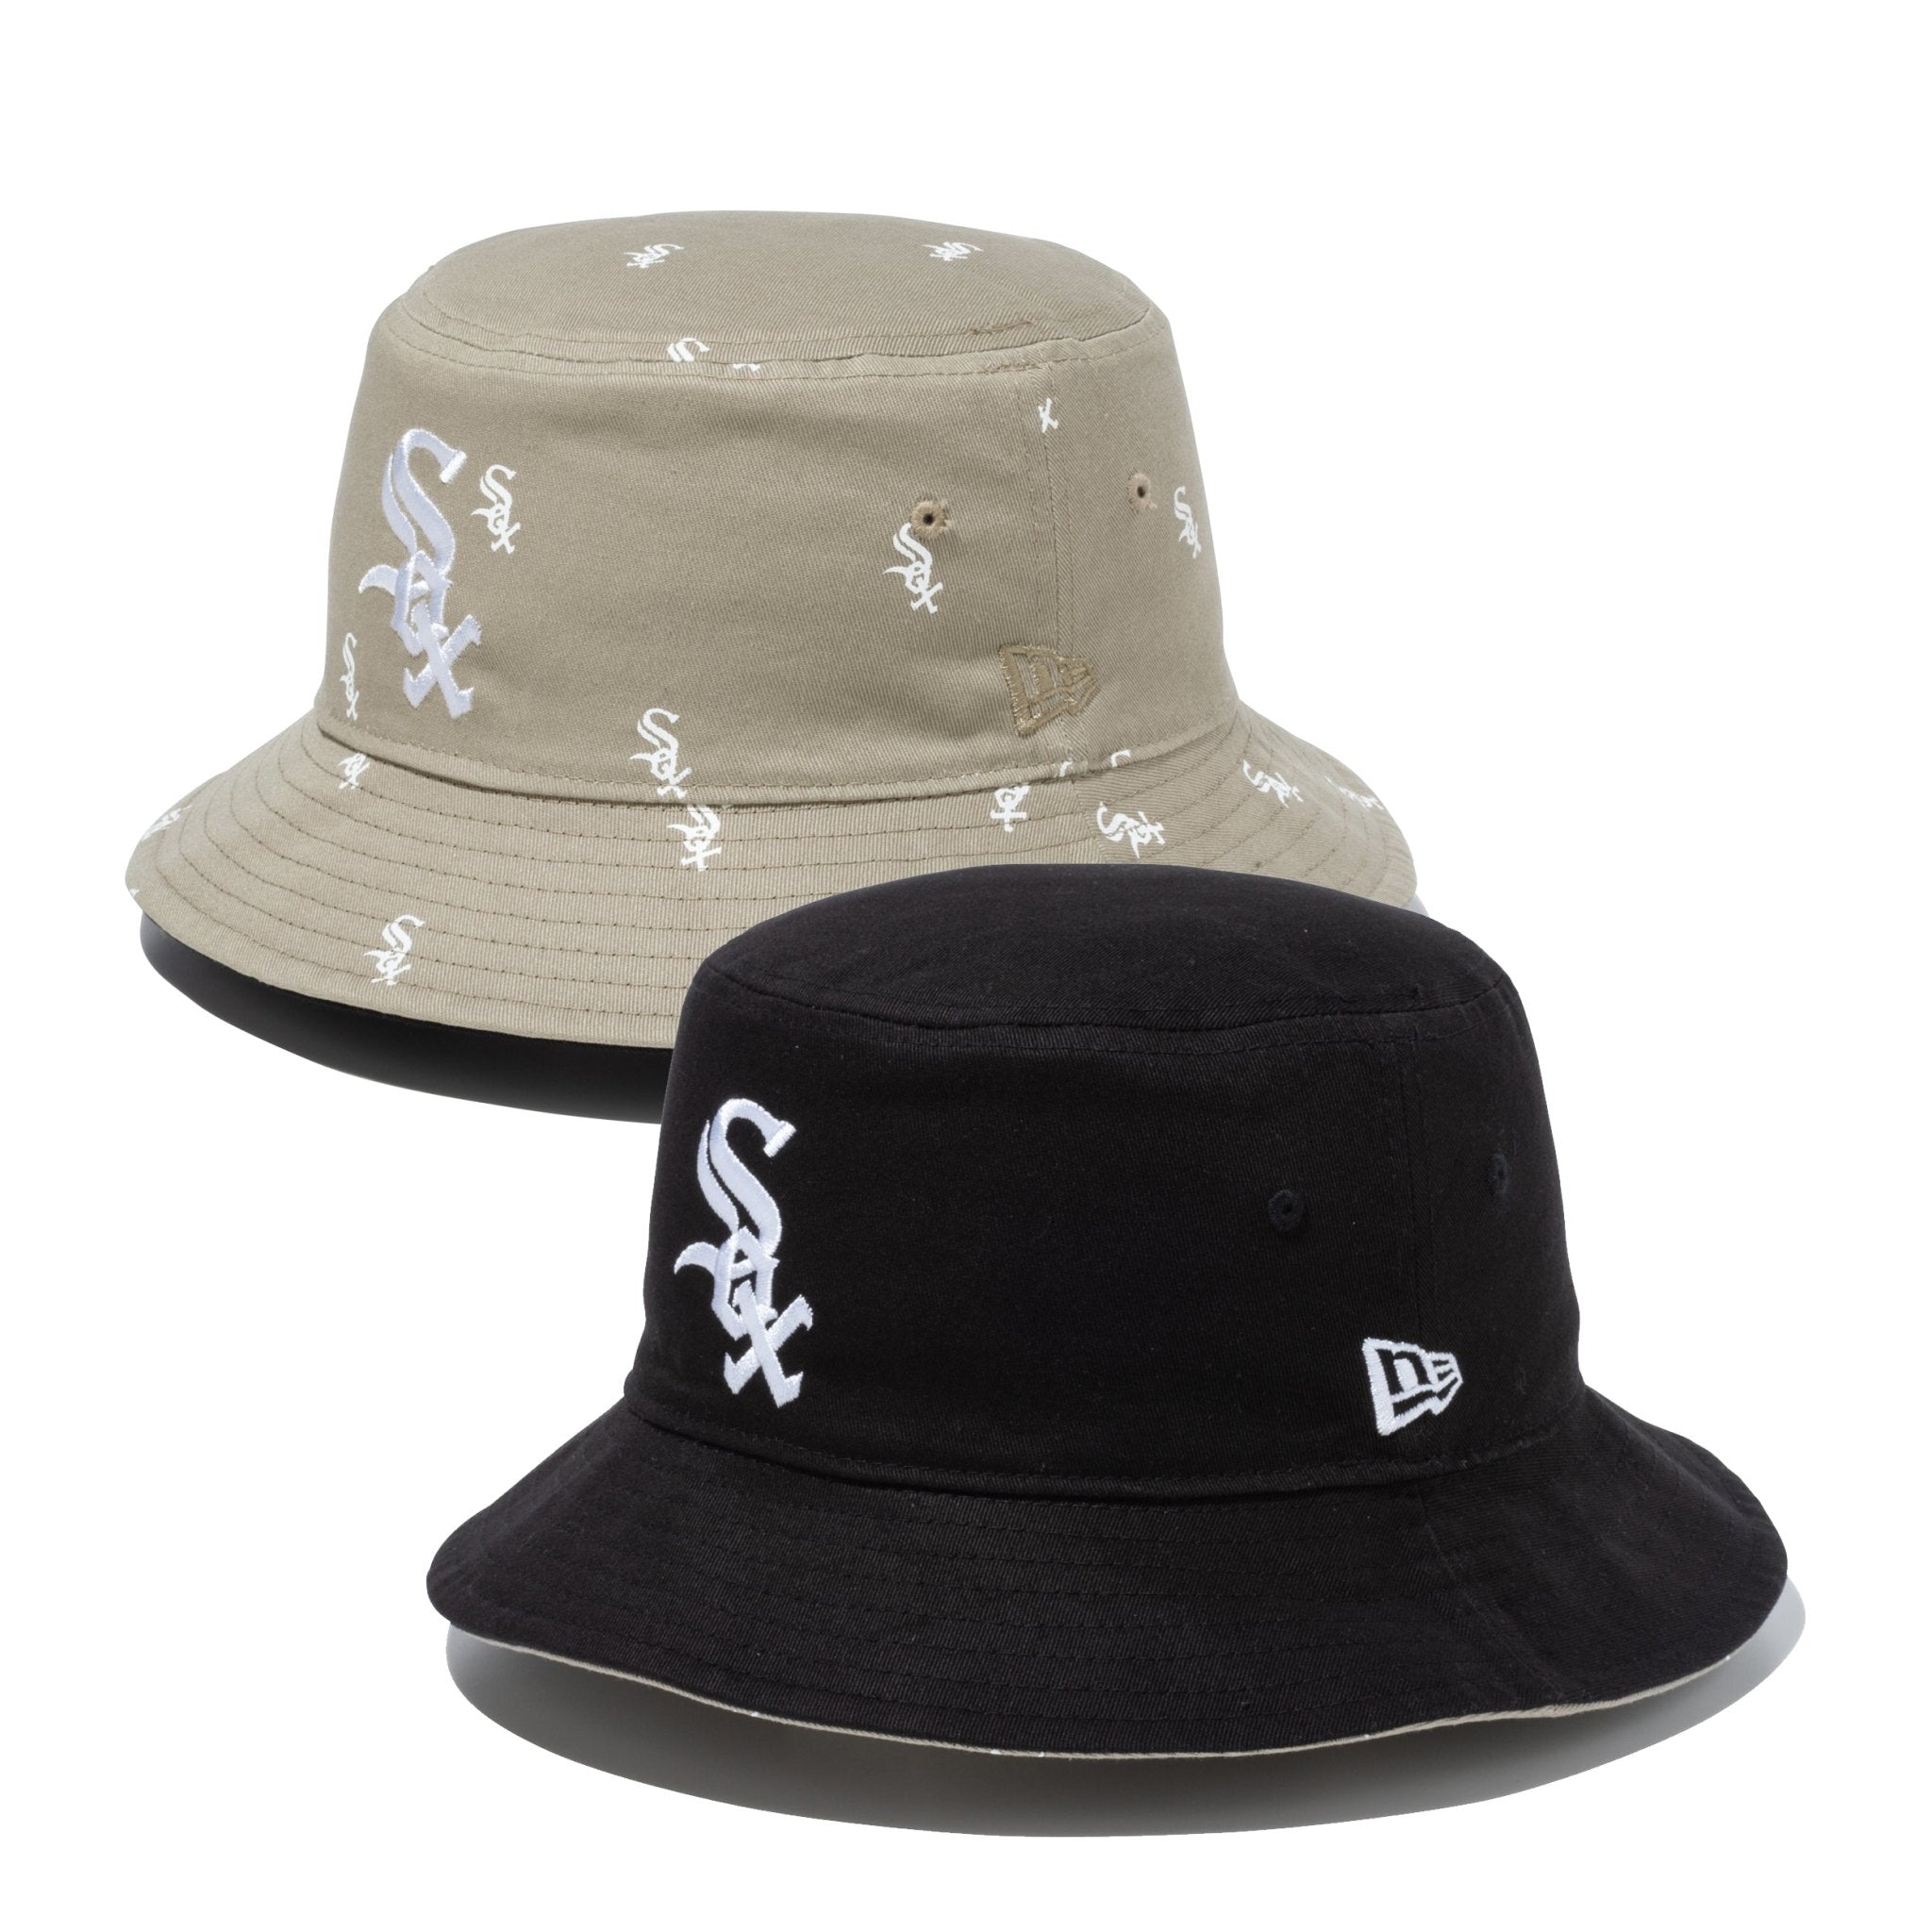 バケット01 MLB Reversible Hat リバーシブル シカゴ・ホワイトソックス ブラック/ペブル